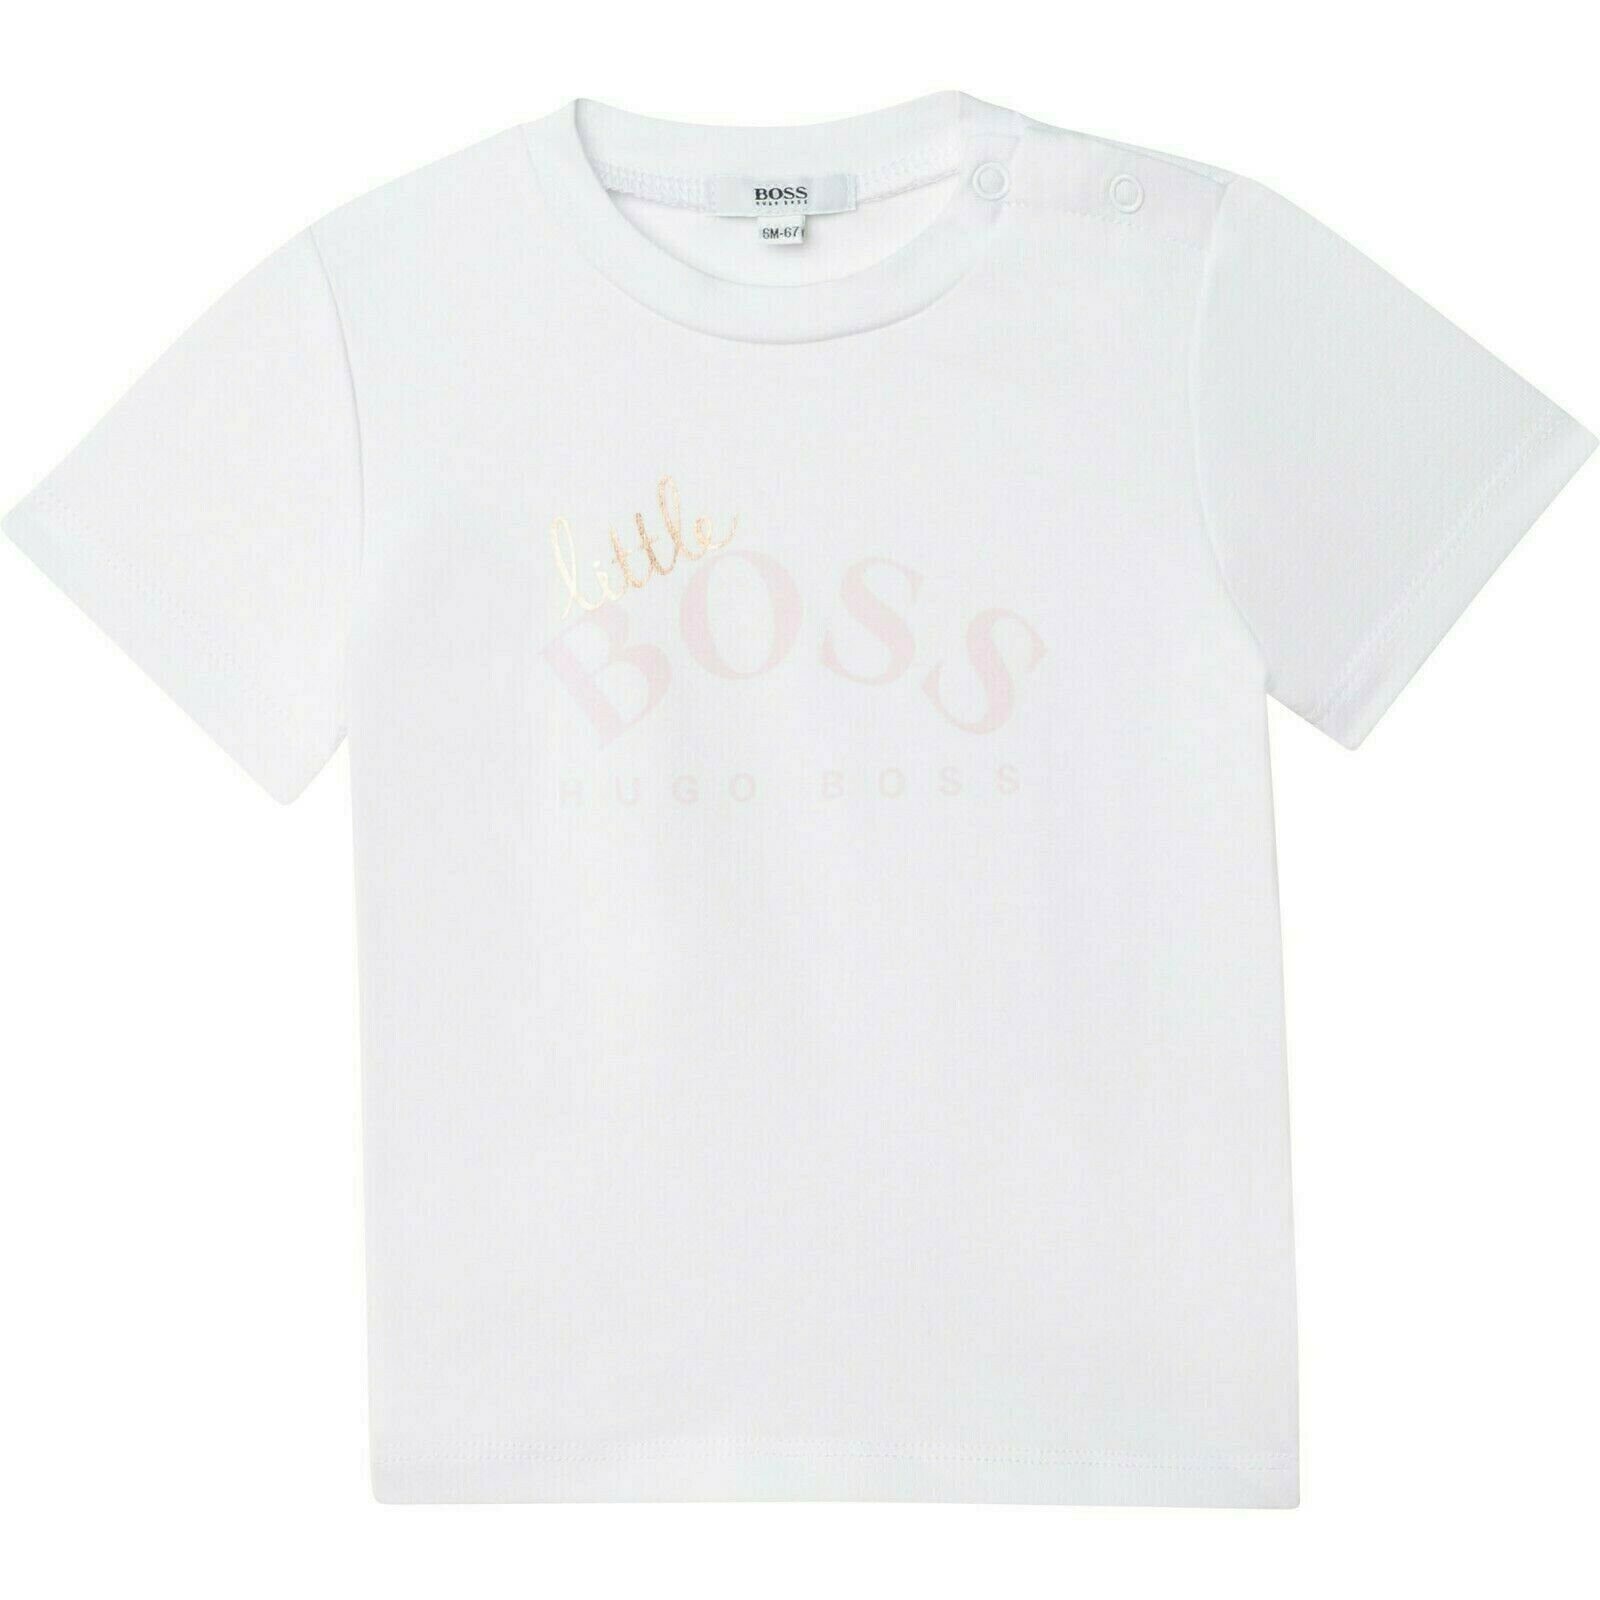 BOSS T-Shirt Hugo Boss Baby T-Shirt little Boss